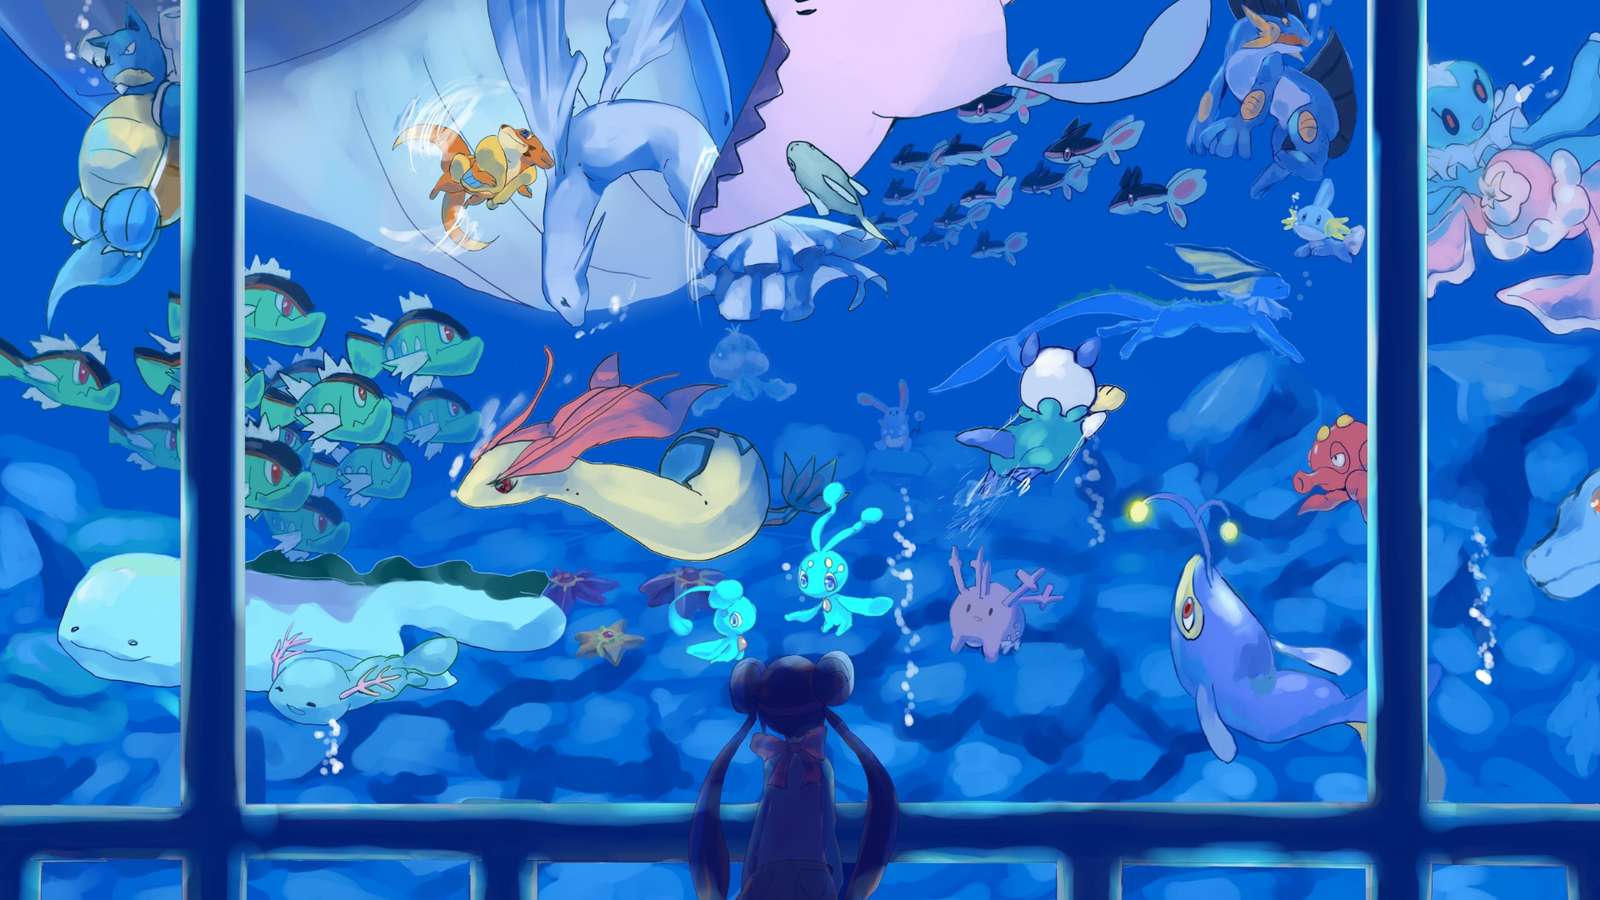 акваріум з покемонами скласти пазл онлайн з фото